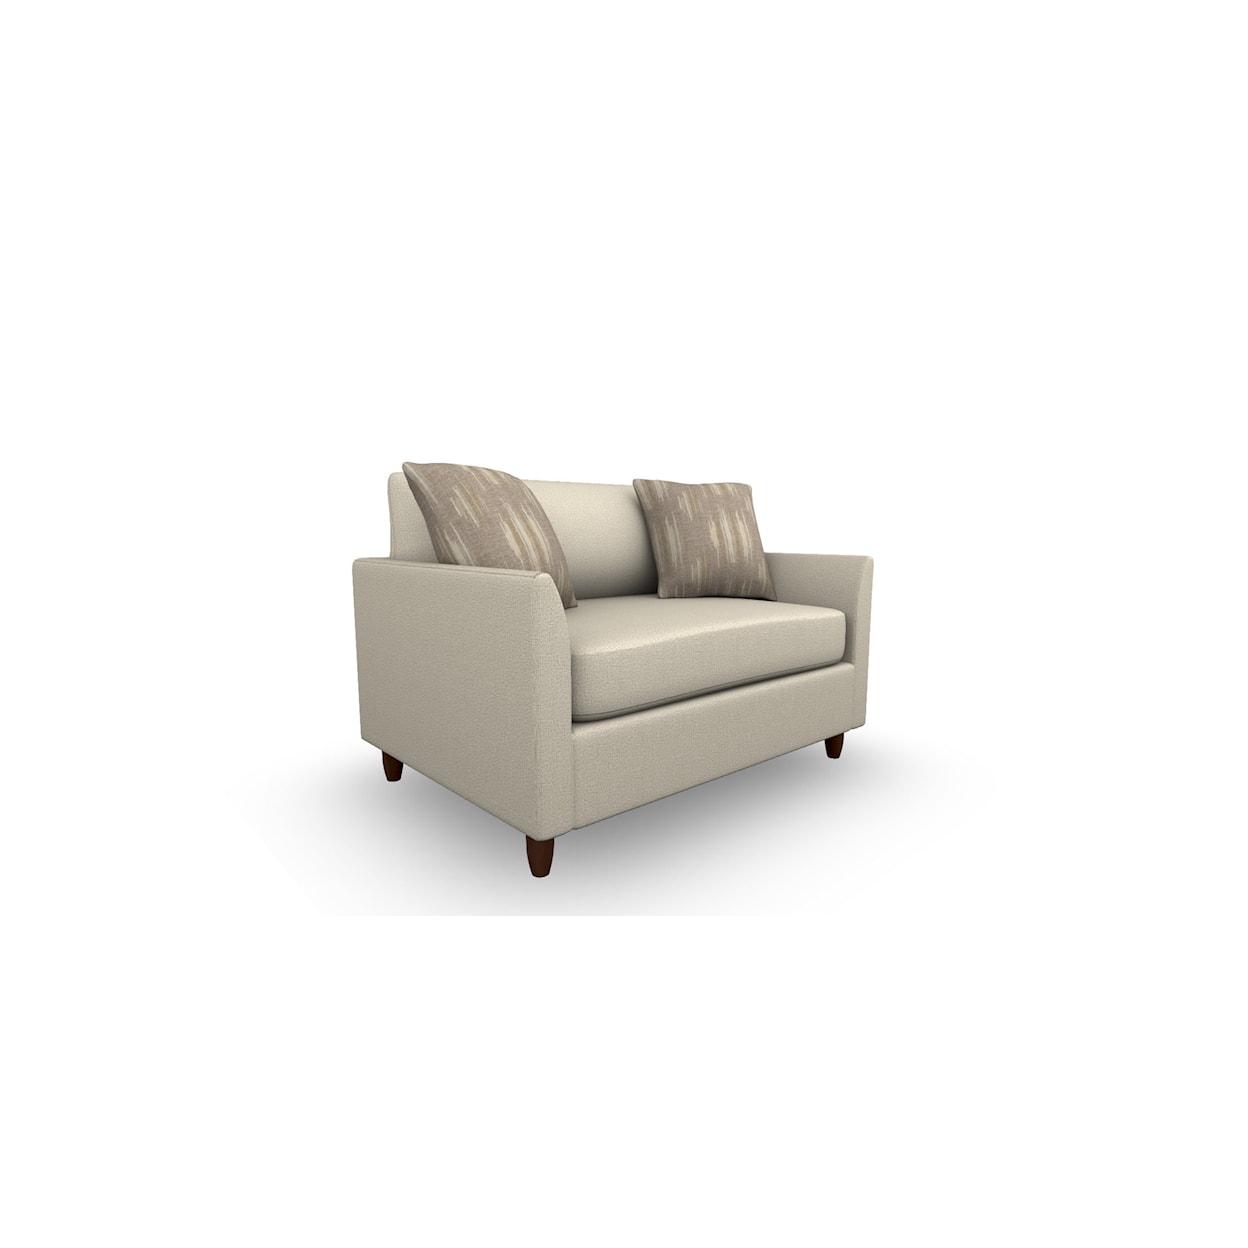 Best Home Furnishings Bayment Chair Sleeper w/Full Memory Foam Sleeper